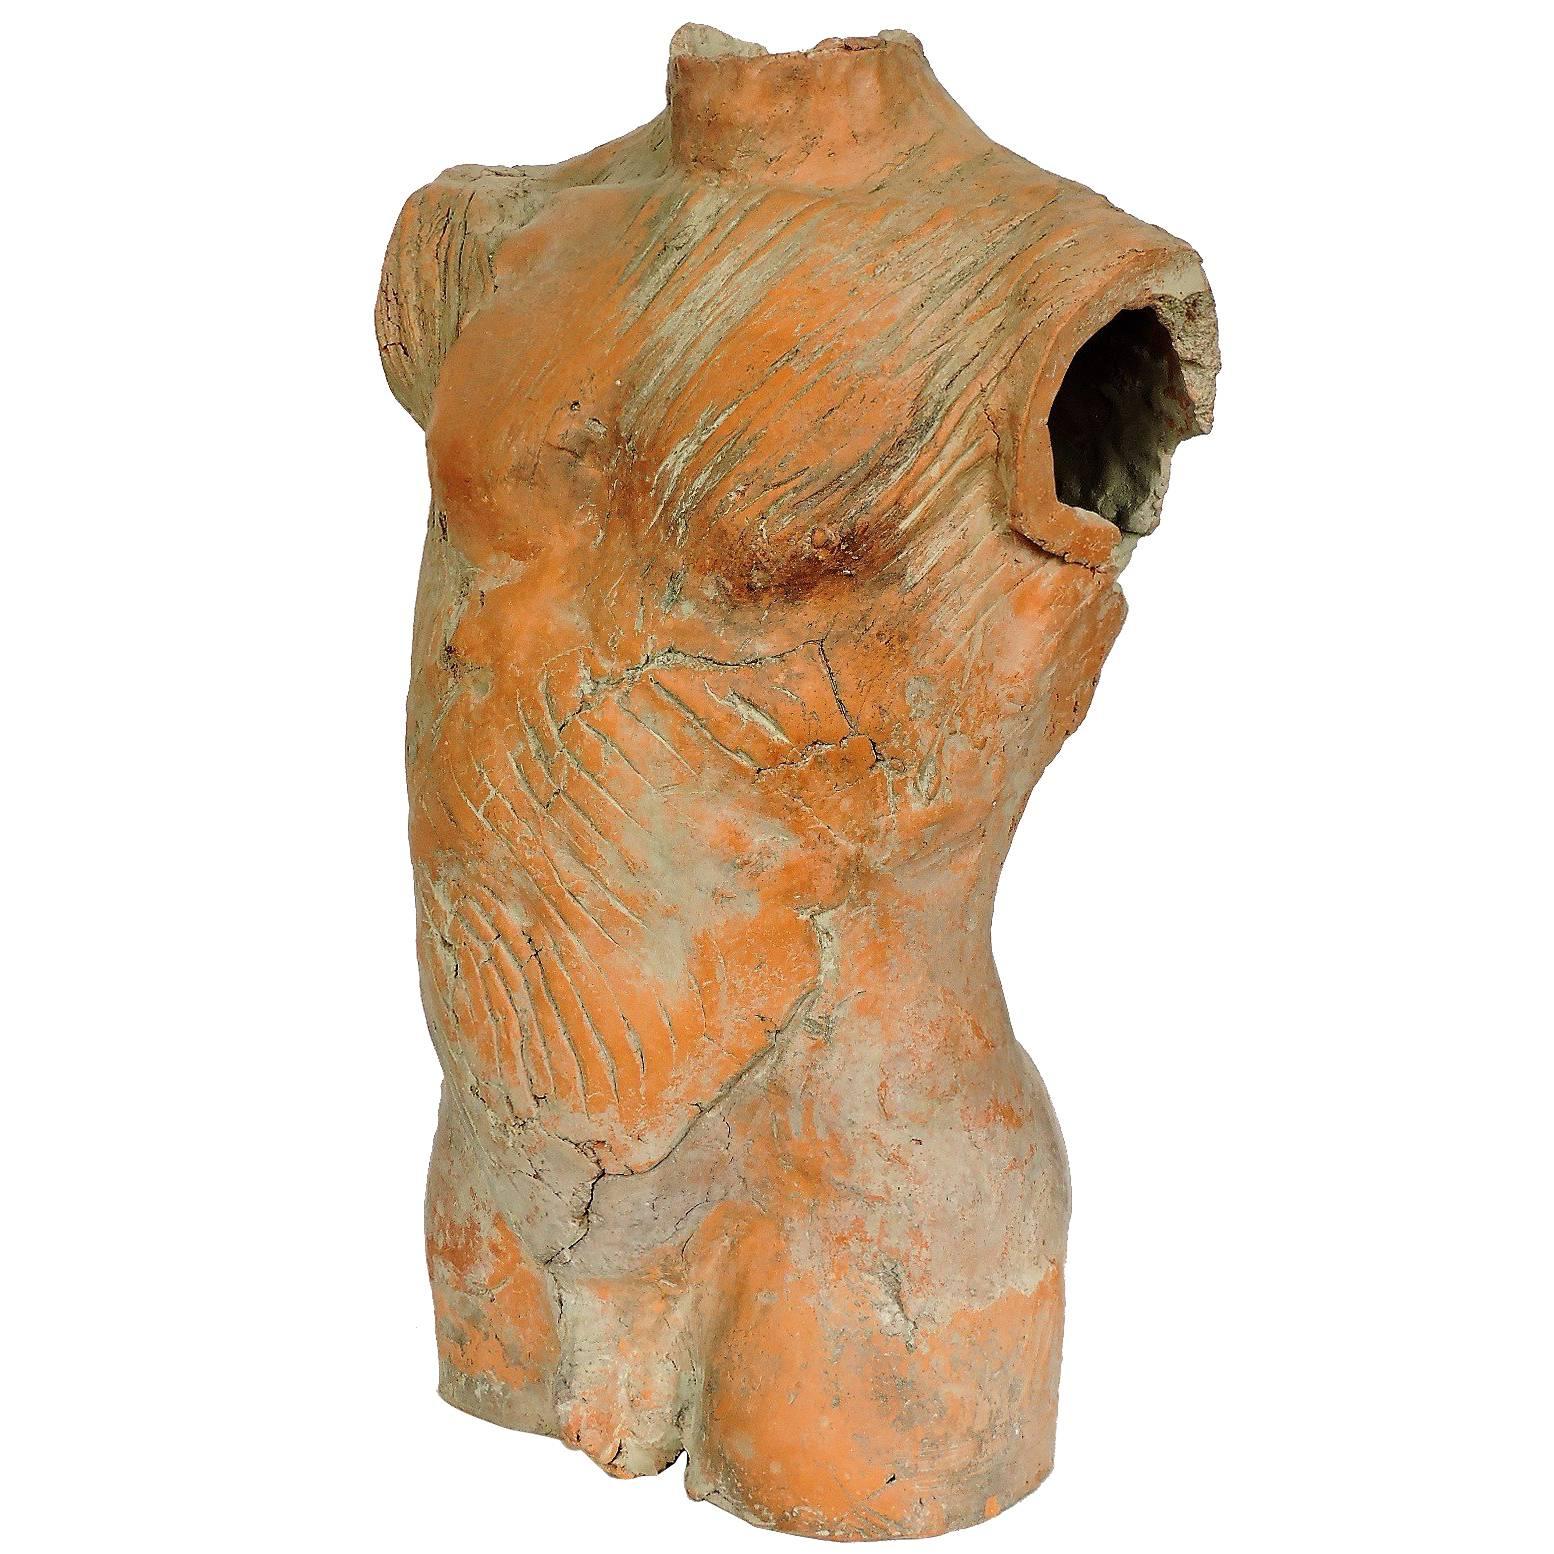   Life Size Male Nude Torso Sculpture